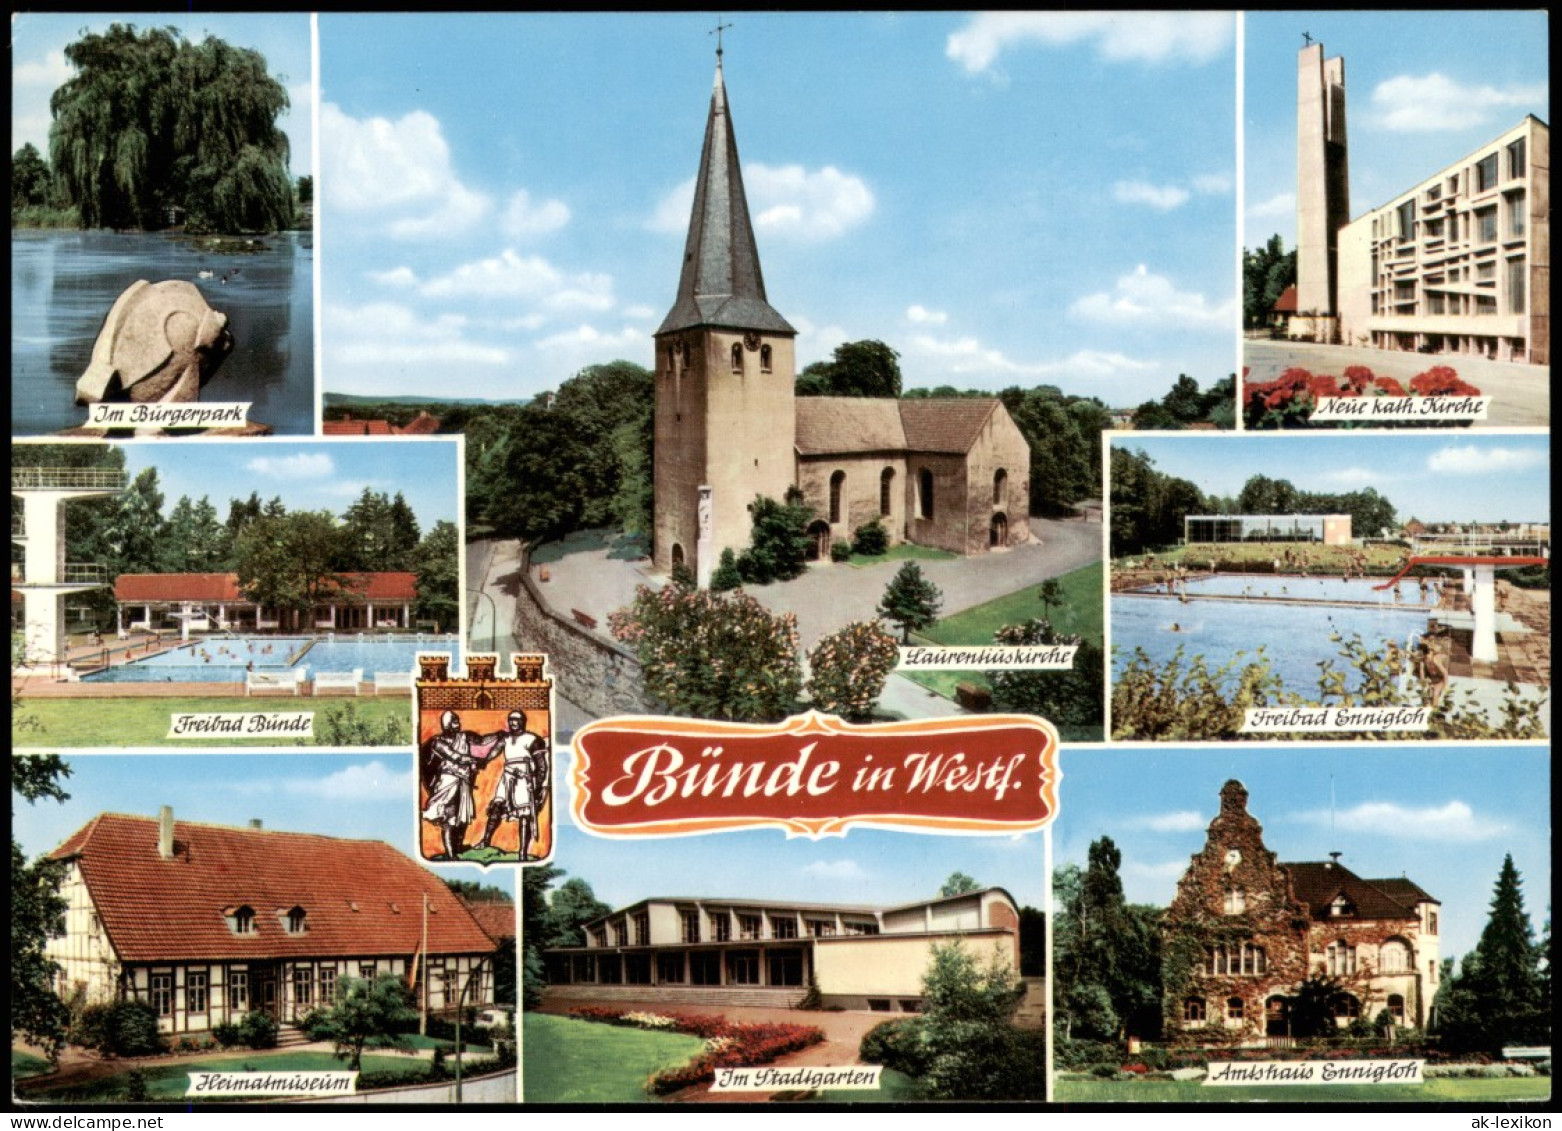 Ansichtskarte Bünde Kirchen, Museum, Amtshaus Uvm 1985 - Buende